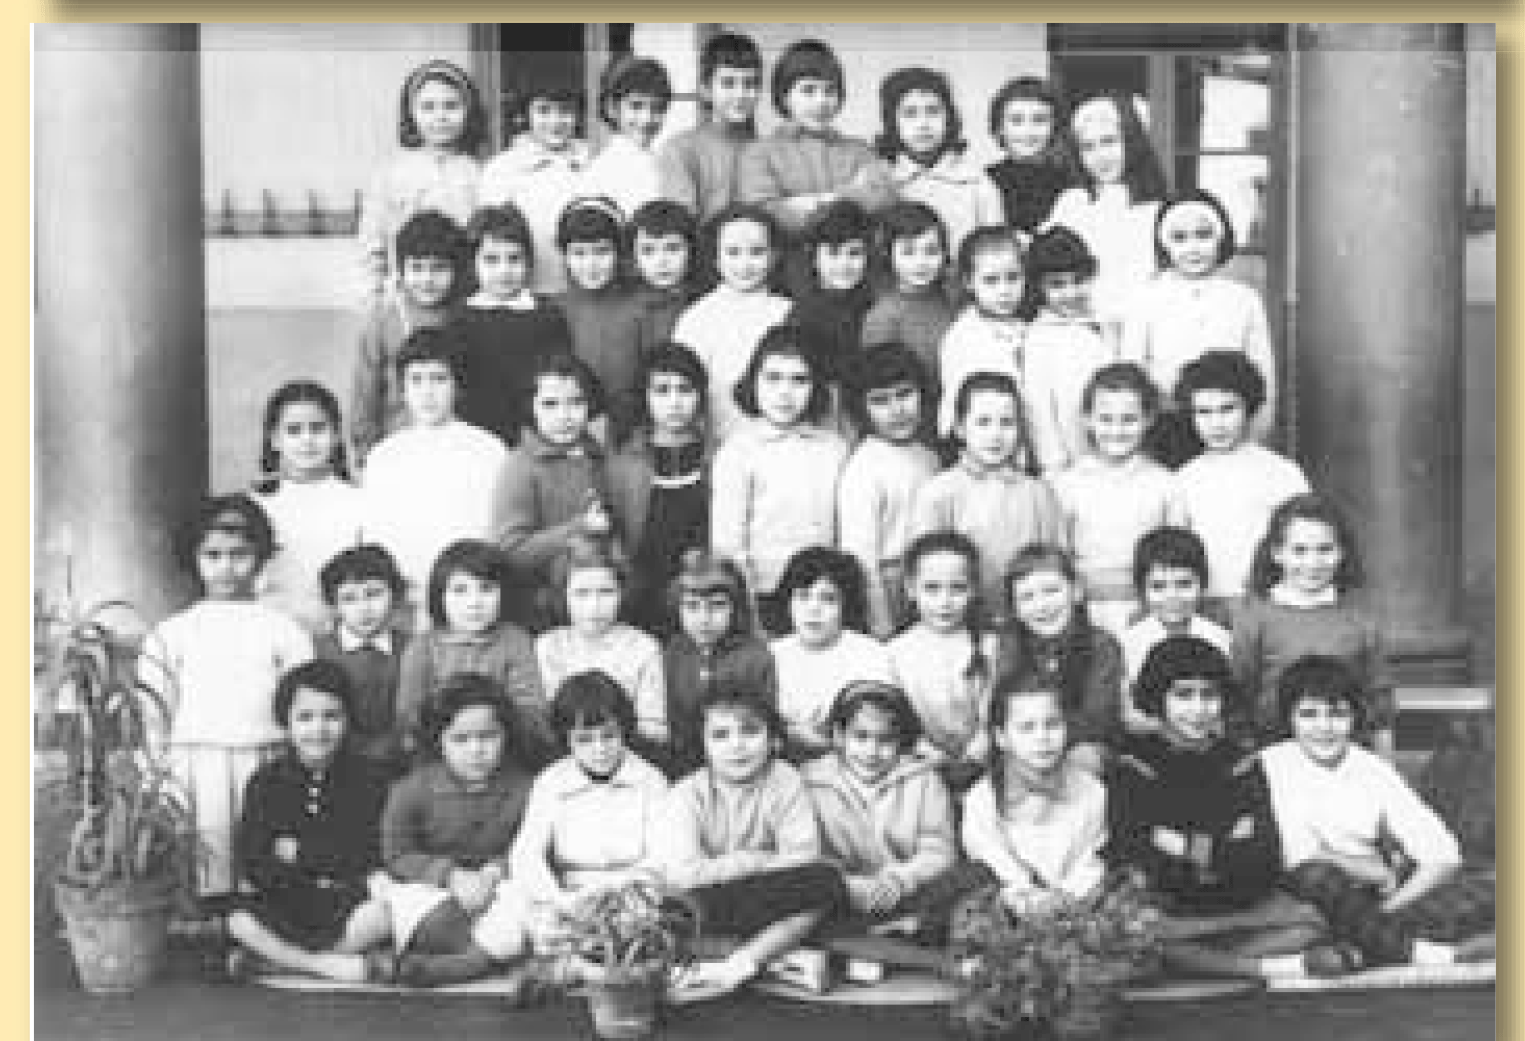 Lycée Lamoricière 1961 - CM2